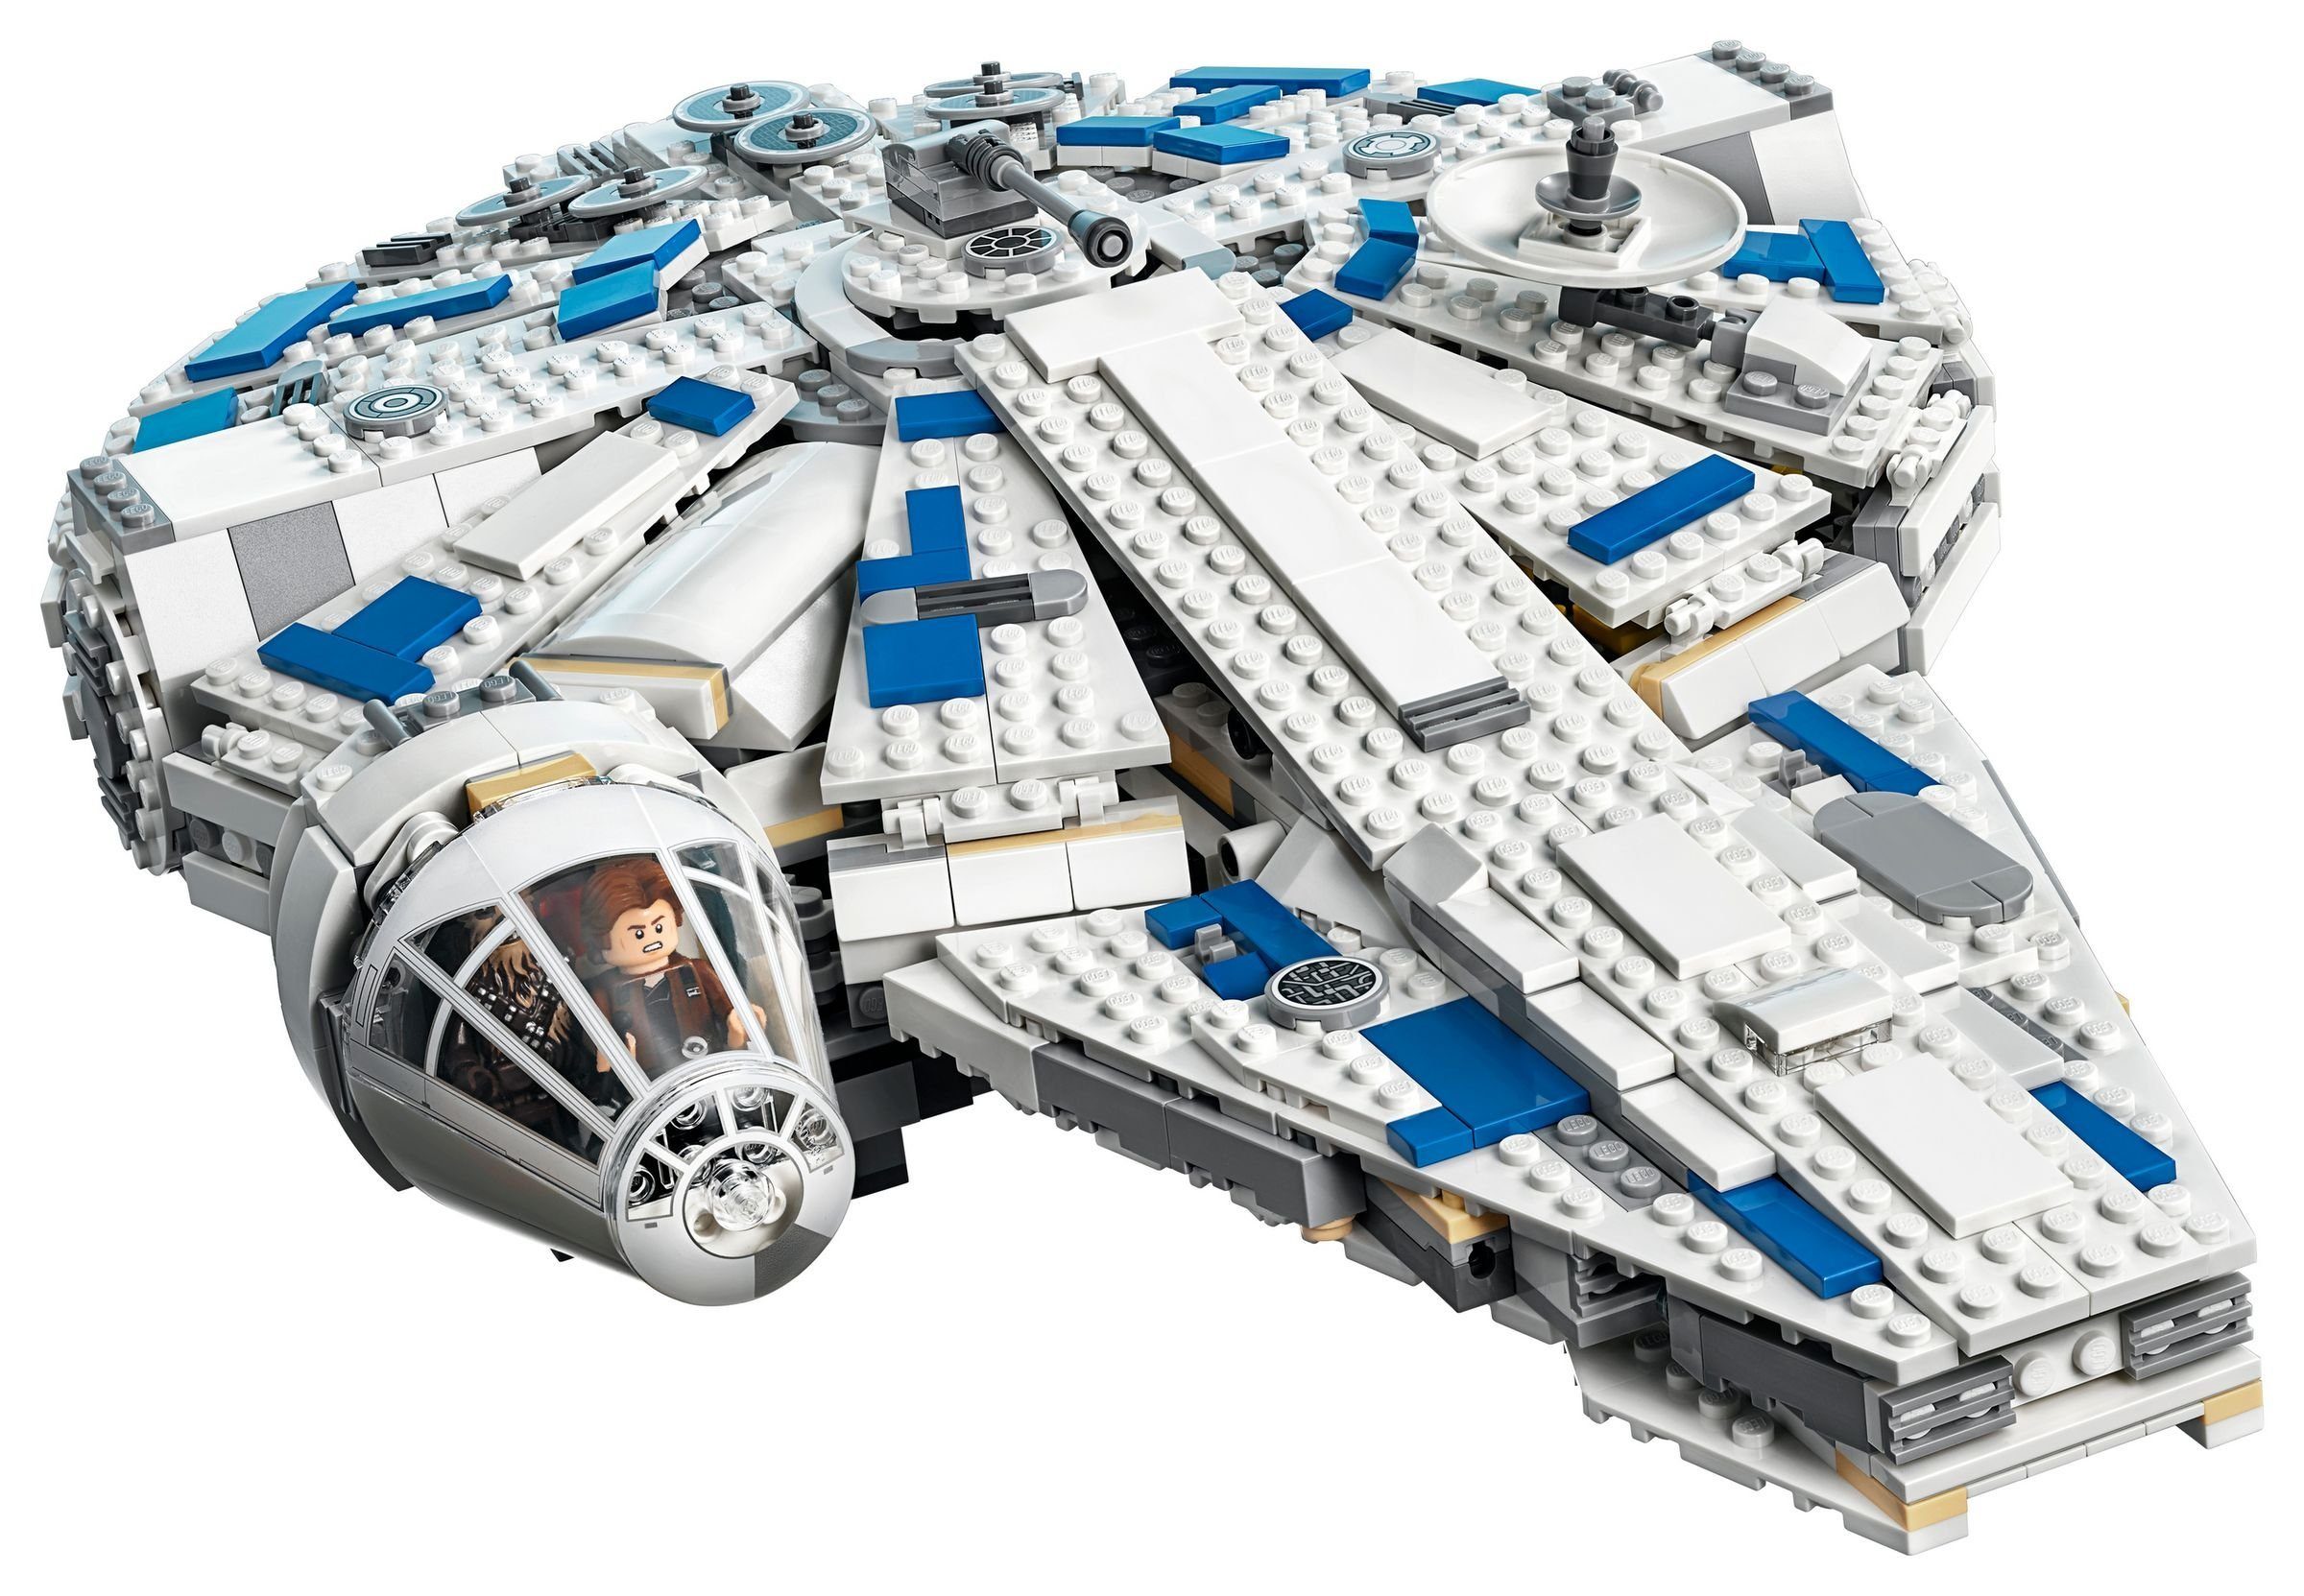 Millennium Falcon™, Star St) Wars™ Konstruktionsspielsteine LEGO® 1414 - LEGO® Run (Set, Kessel